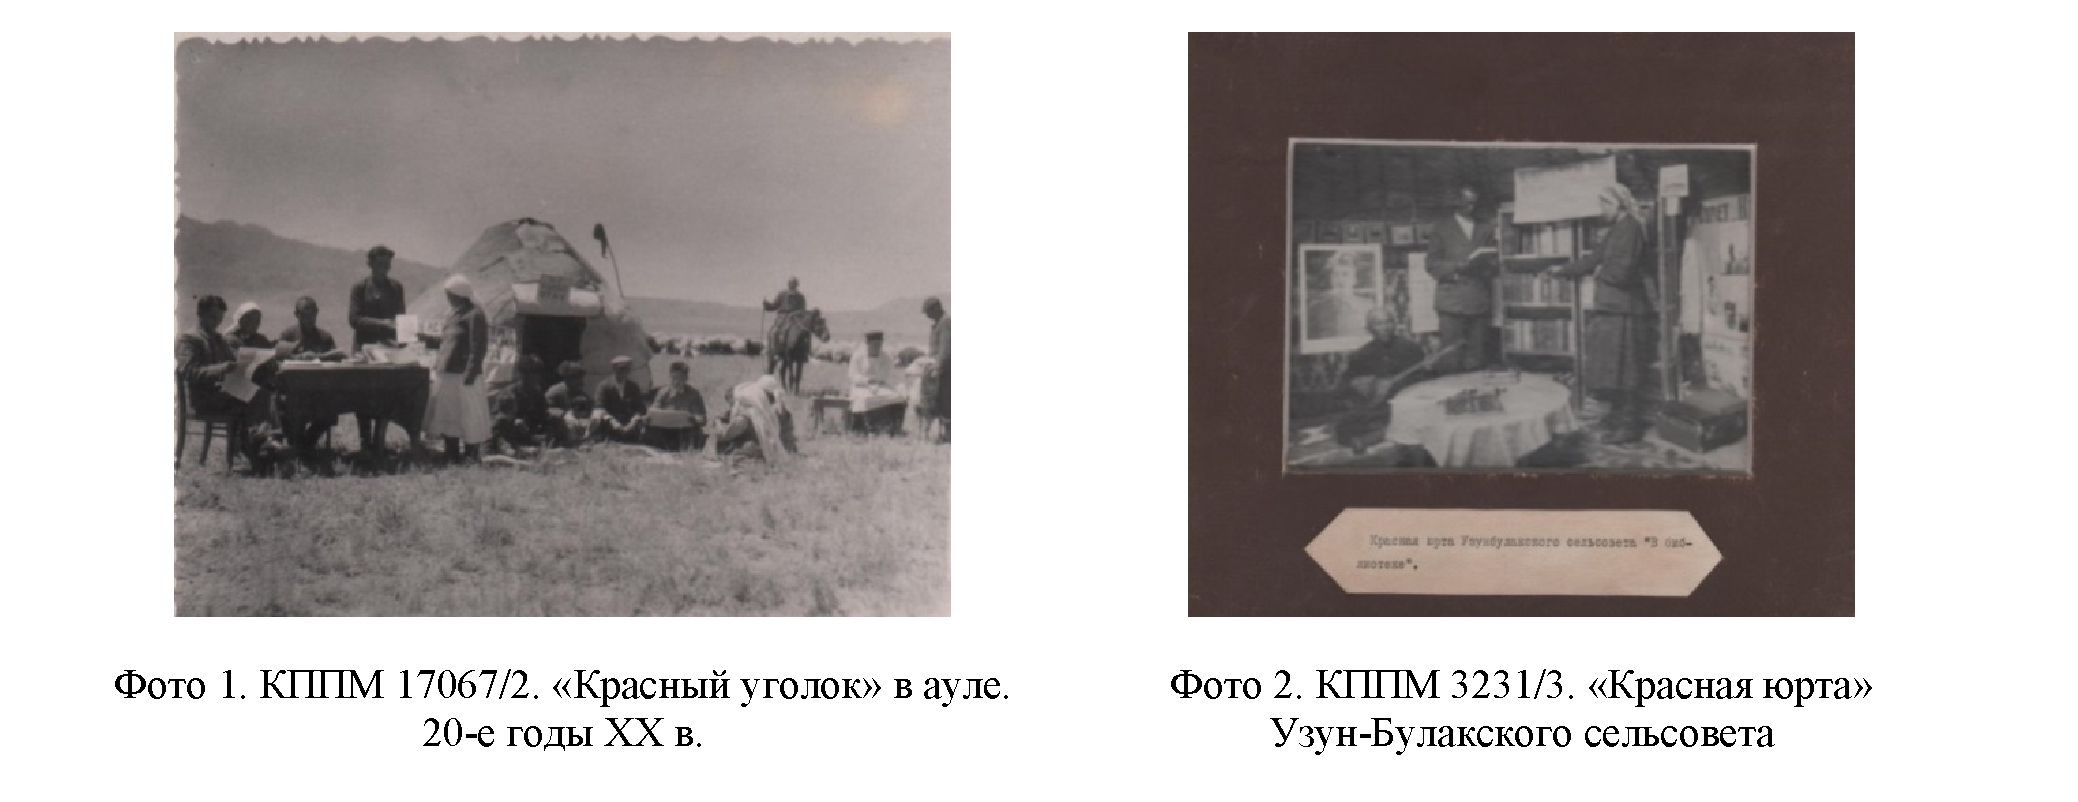 Особенности и формы развития народного творчества: прошлое и настоящее(на примере казахского народного искусства)